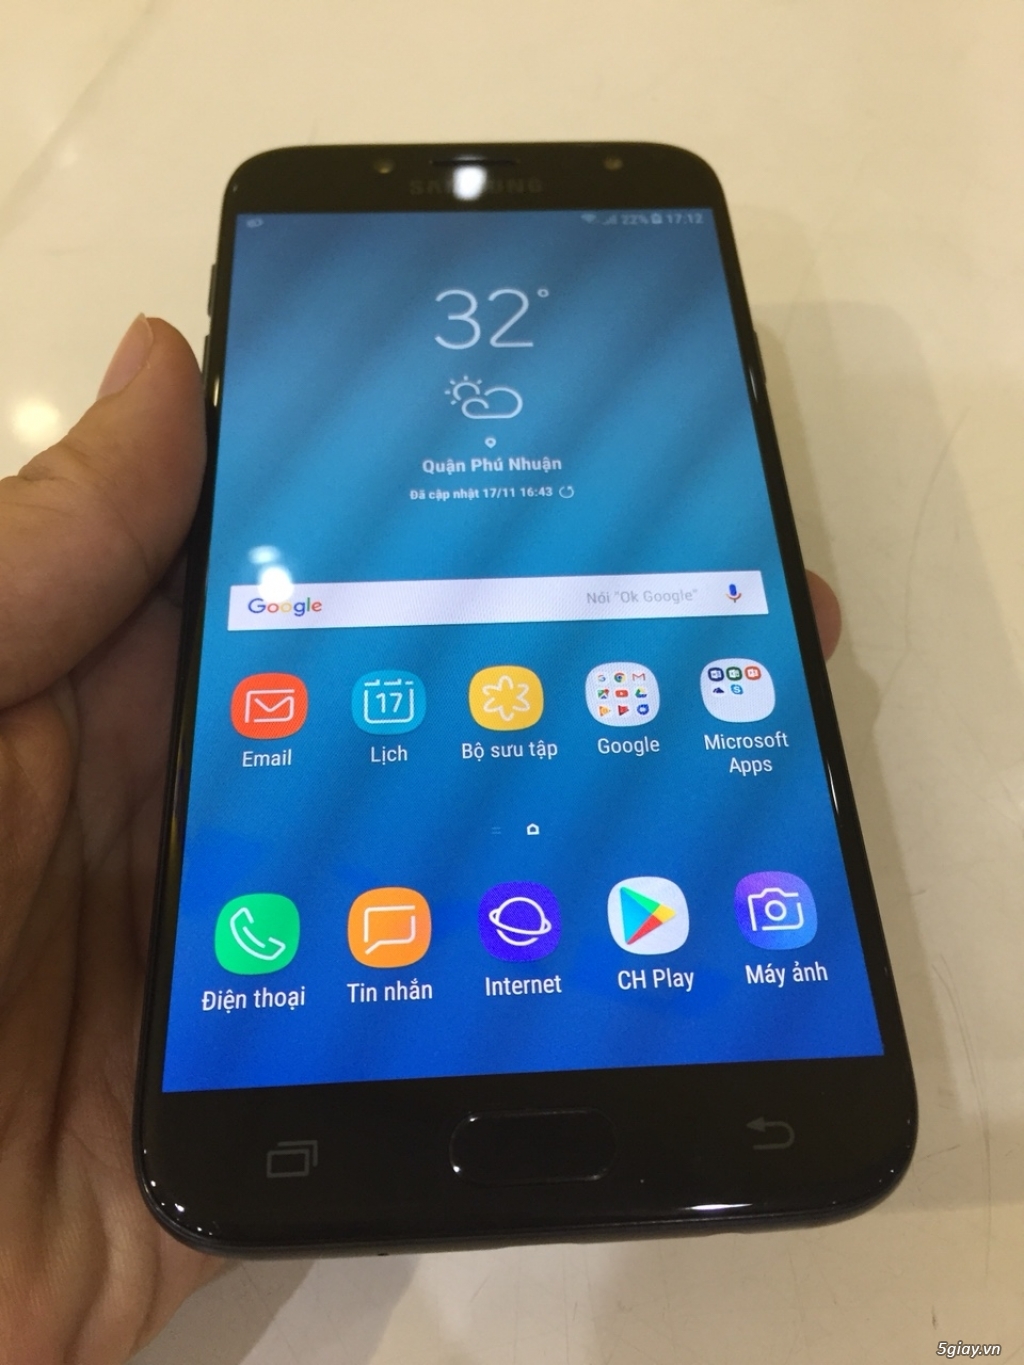 Cần bán Samsung J7 Pro Black, Hãng, BH 11 tháng, đẹp 99,9% - 1